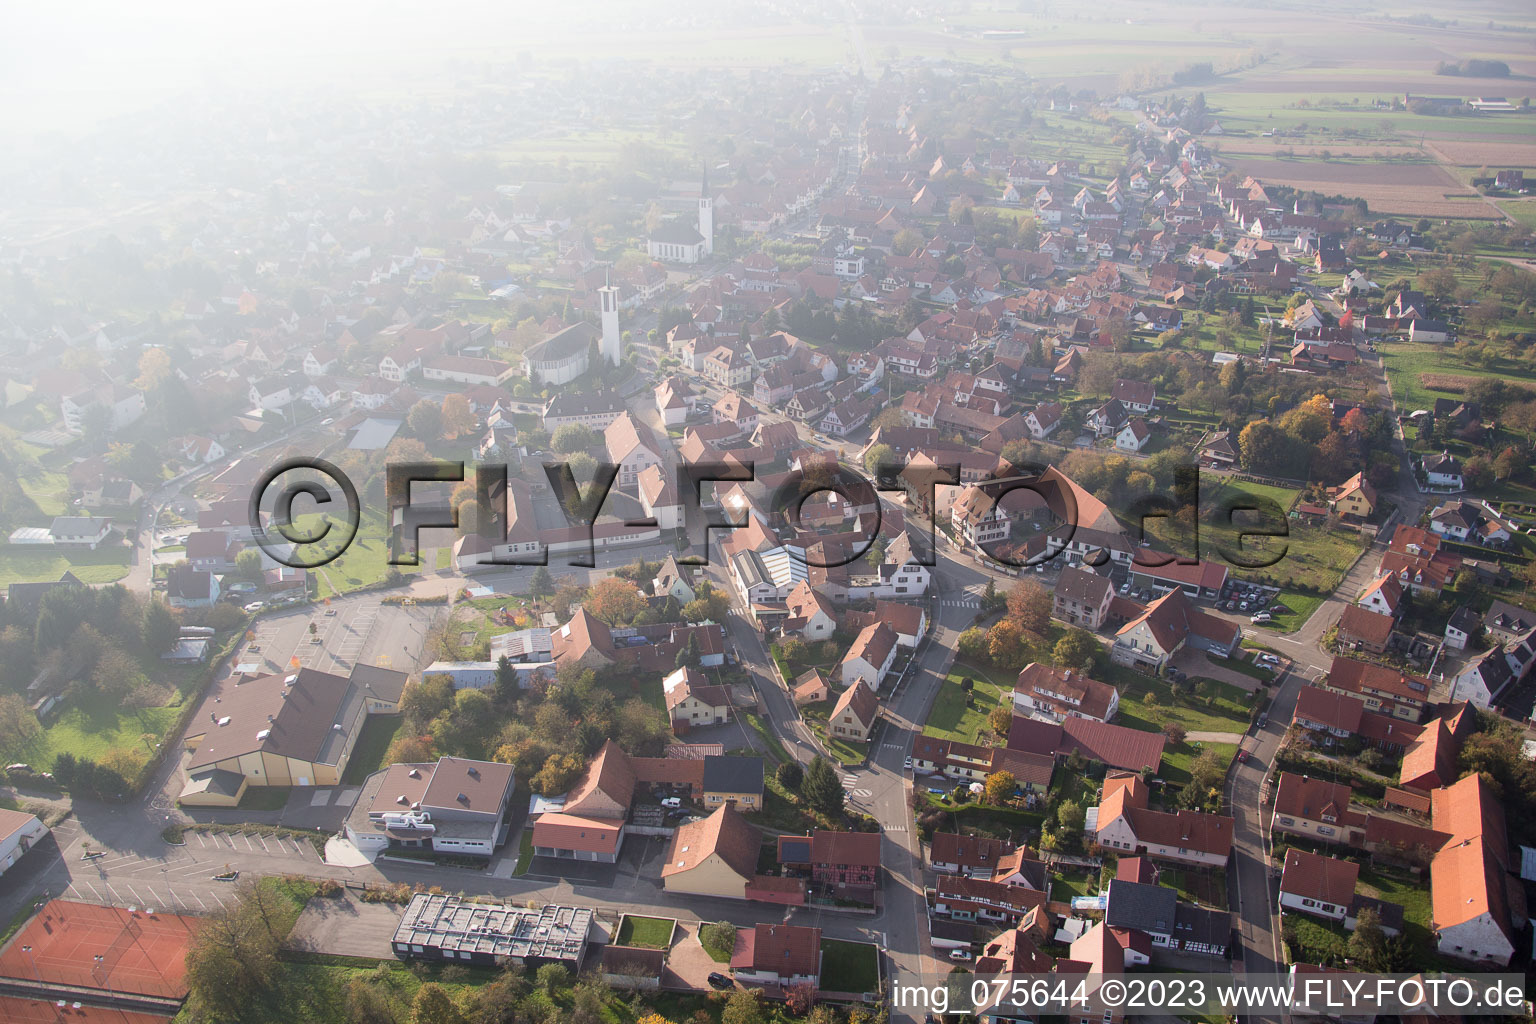 Hatten im Bundesland Bas-Rhin, Frankreich aus der Luft betrachtet